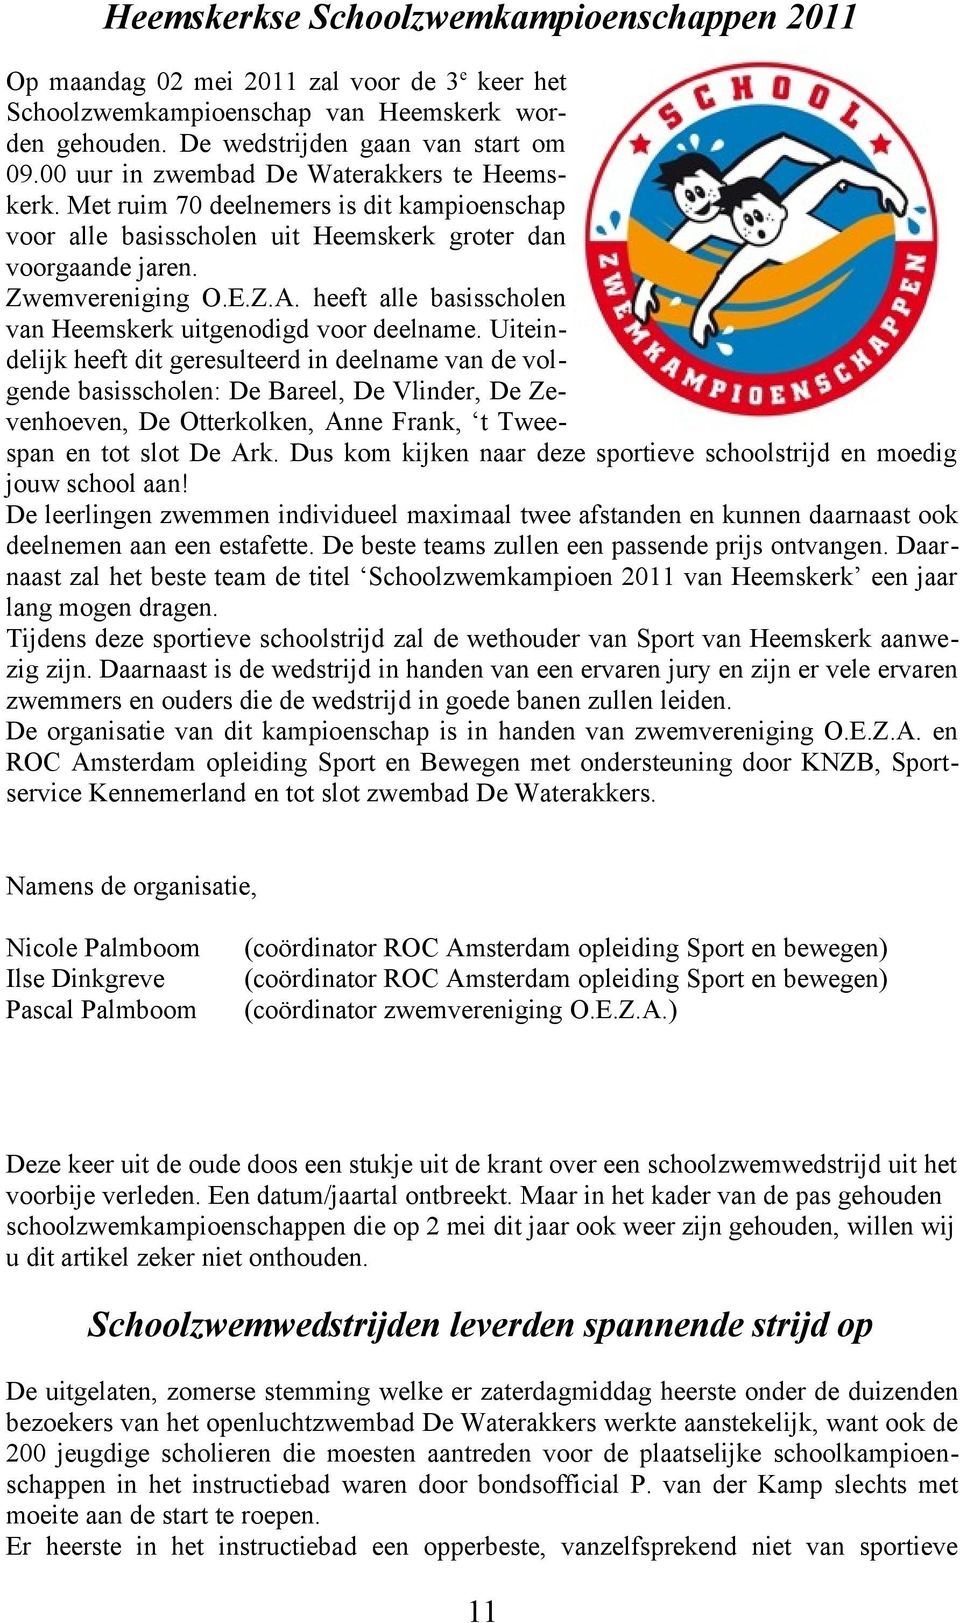 heeft alle basisscholen van Heemskerk uitgenodigd voor deelname.